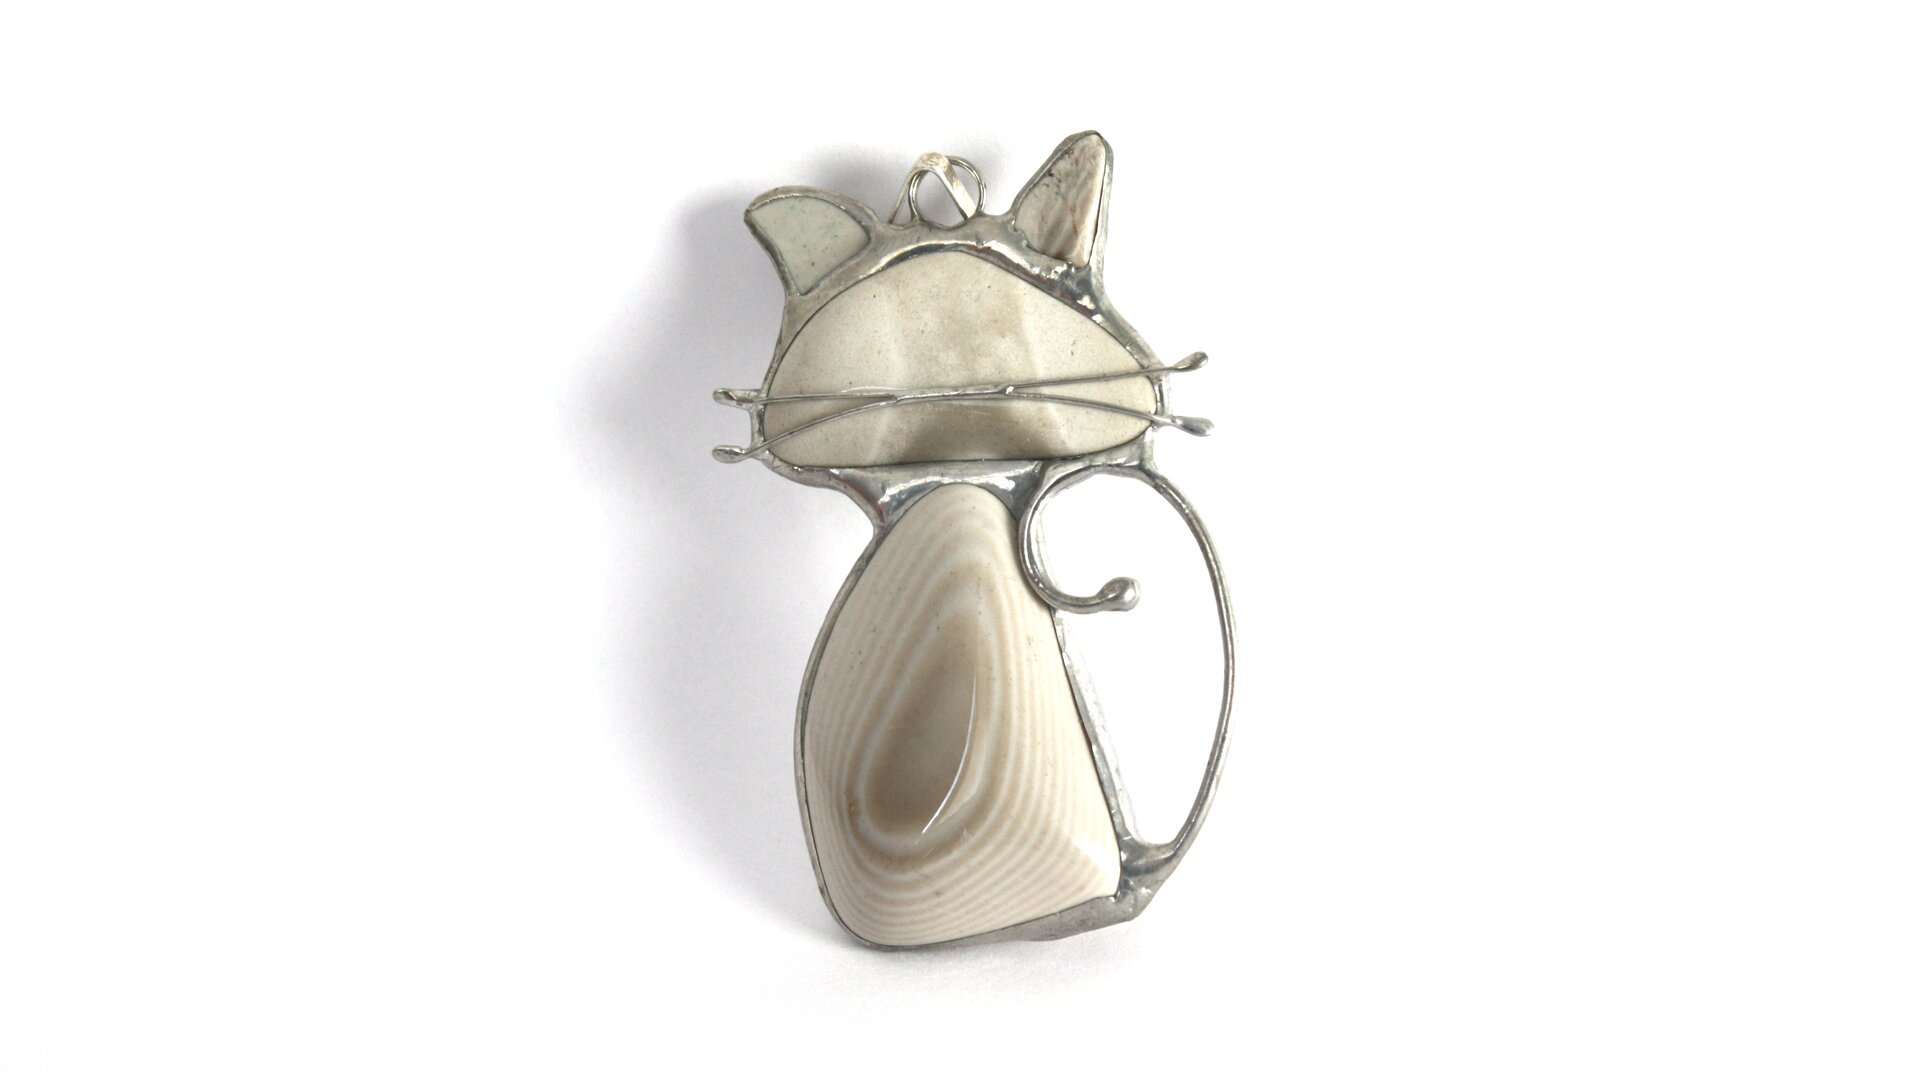 Zdjęcie przedstawia przykład biżuterii z krzemienia pasiastego, naszyjnik. W metalową, przypuszczalnie srebrną oprawkę w kształcie kotka wprawiono cztery kawałki krzemienia pasiastego. Największy, o wyraźnym biało beżowym wzorze tworzy brzuch kota, nieco mniejszy beżowy to głowa, a dwa najmniejsze wypełniają przestrzeń na uszy. Kotek ma również wąsy zrobione z dwóch drucików zlutowanych z resztą metalowej oprawki i przyklejonych do kamienia.